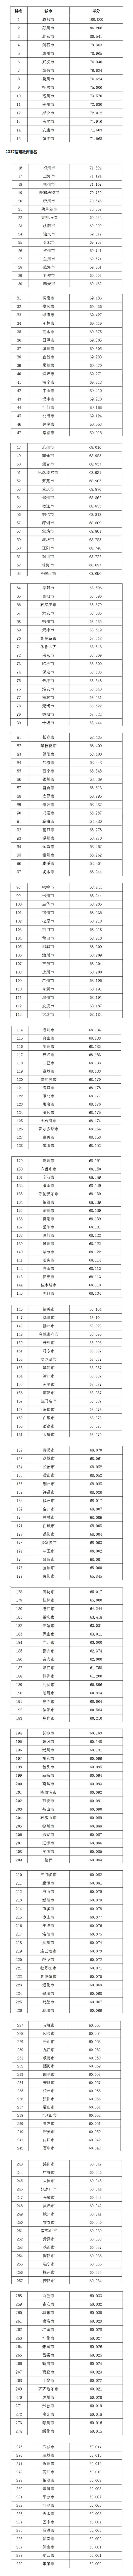 2017中国城市商业信用环境体检报告（CEI）指数在京发布